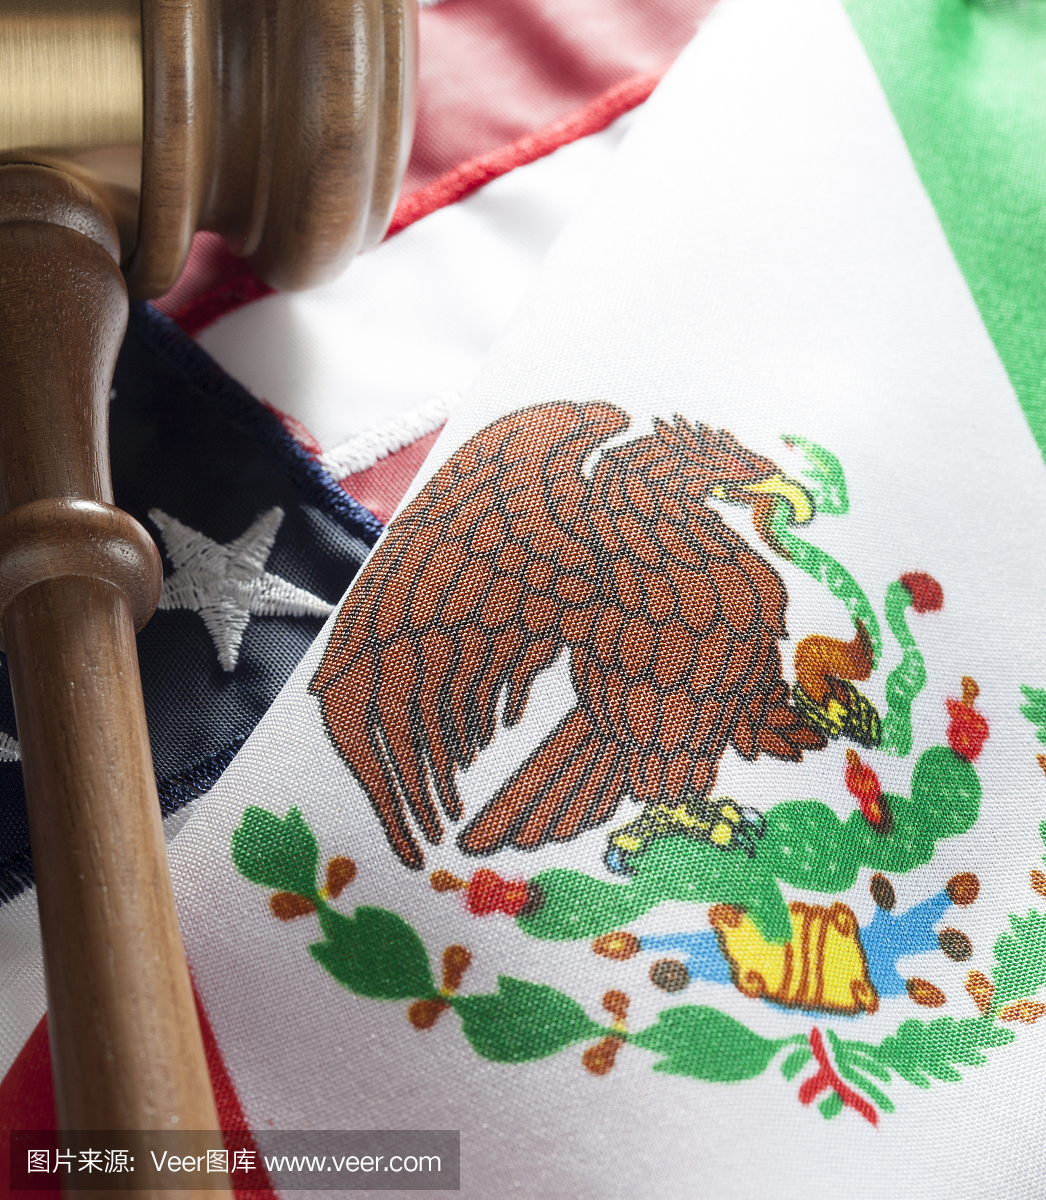 墨西哥 - 美国法律服务